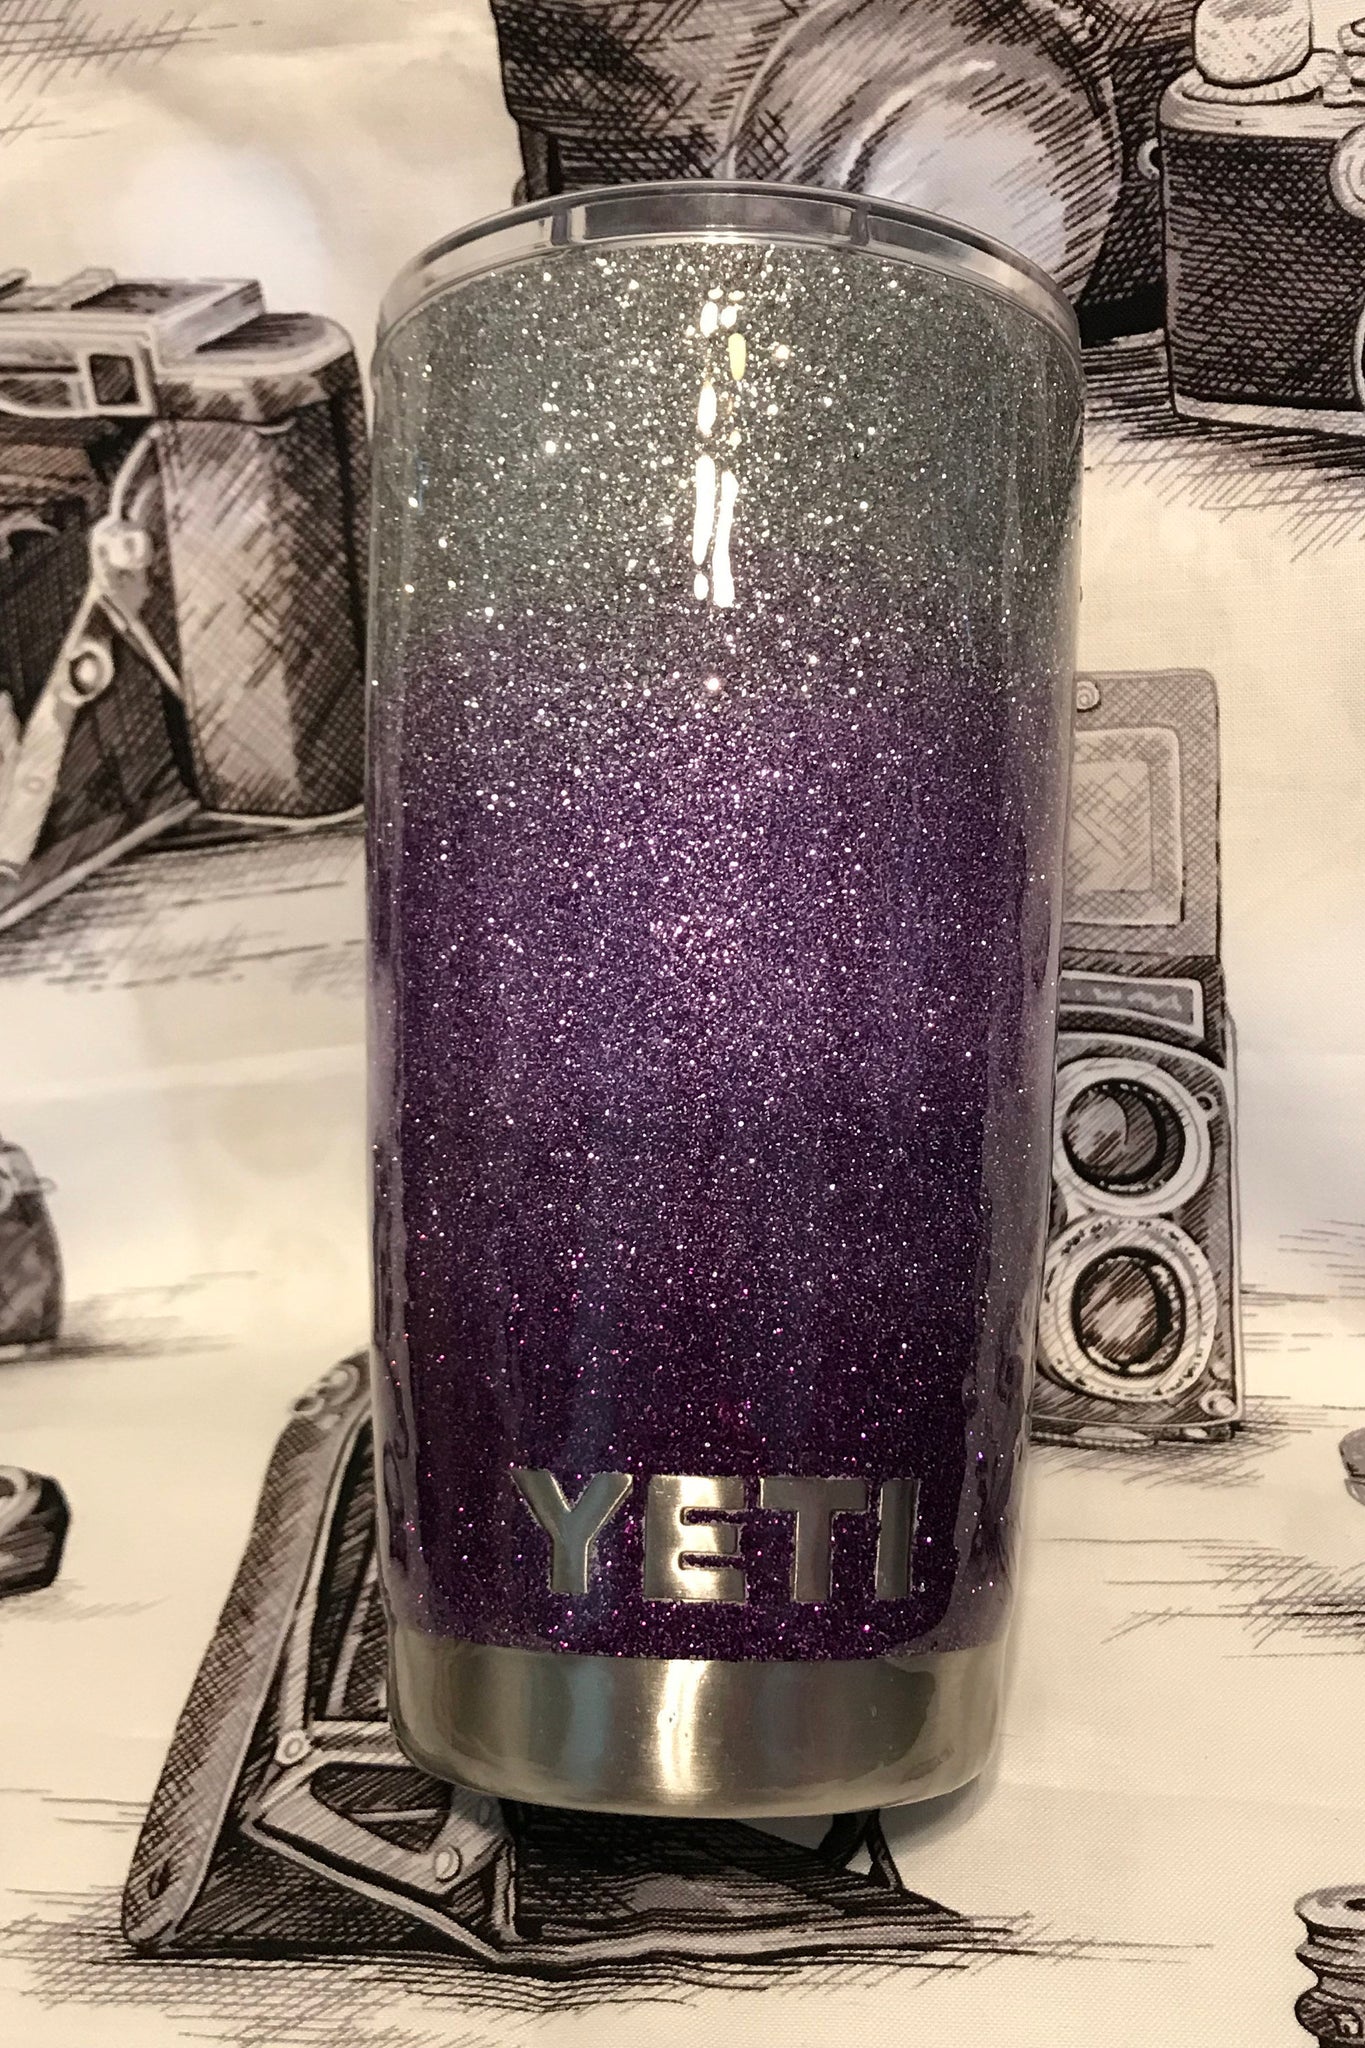 Purple glitter Yeti/Purple Yeti/Glitter Yeti/Glitter